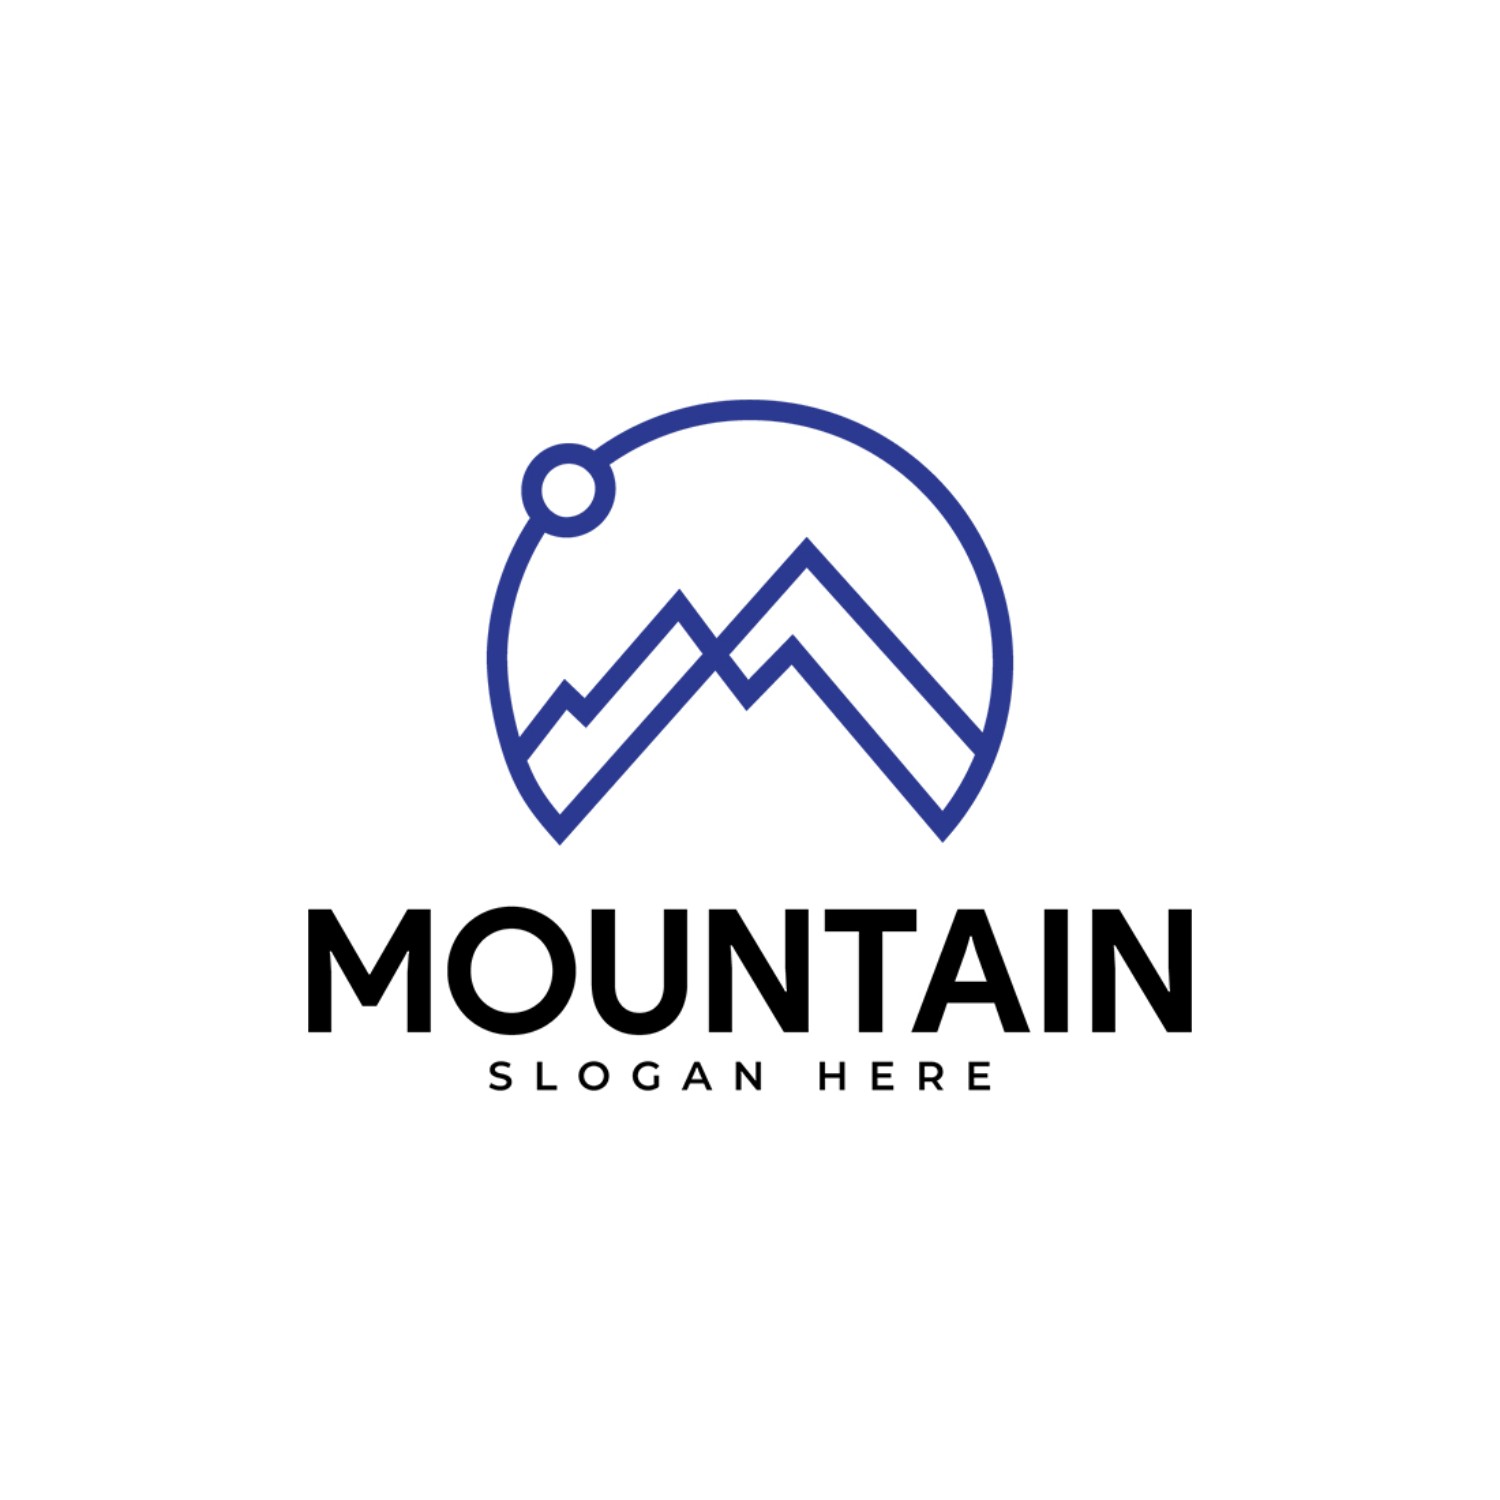 Mountain Line Art Vector Logo Design cover image.